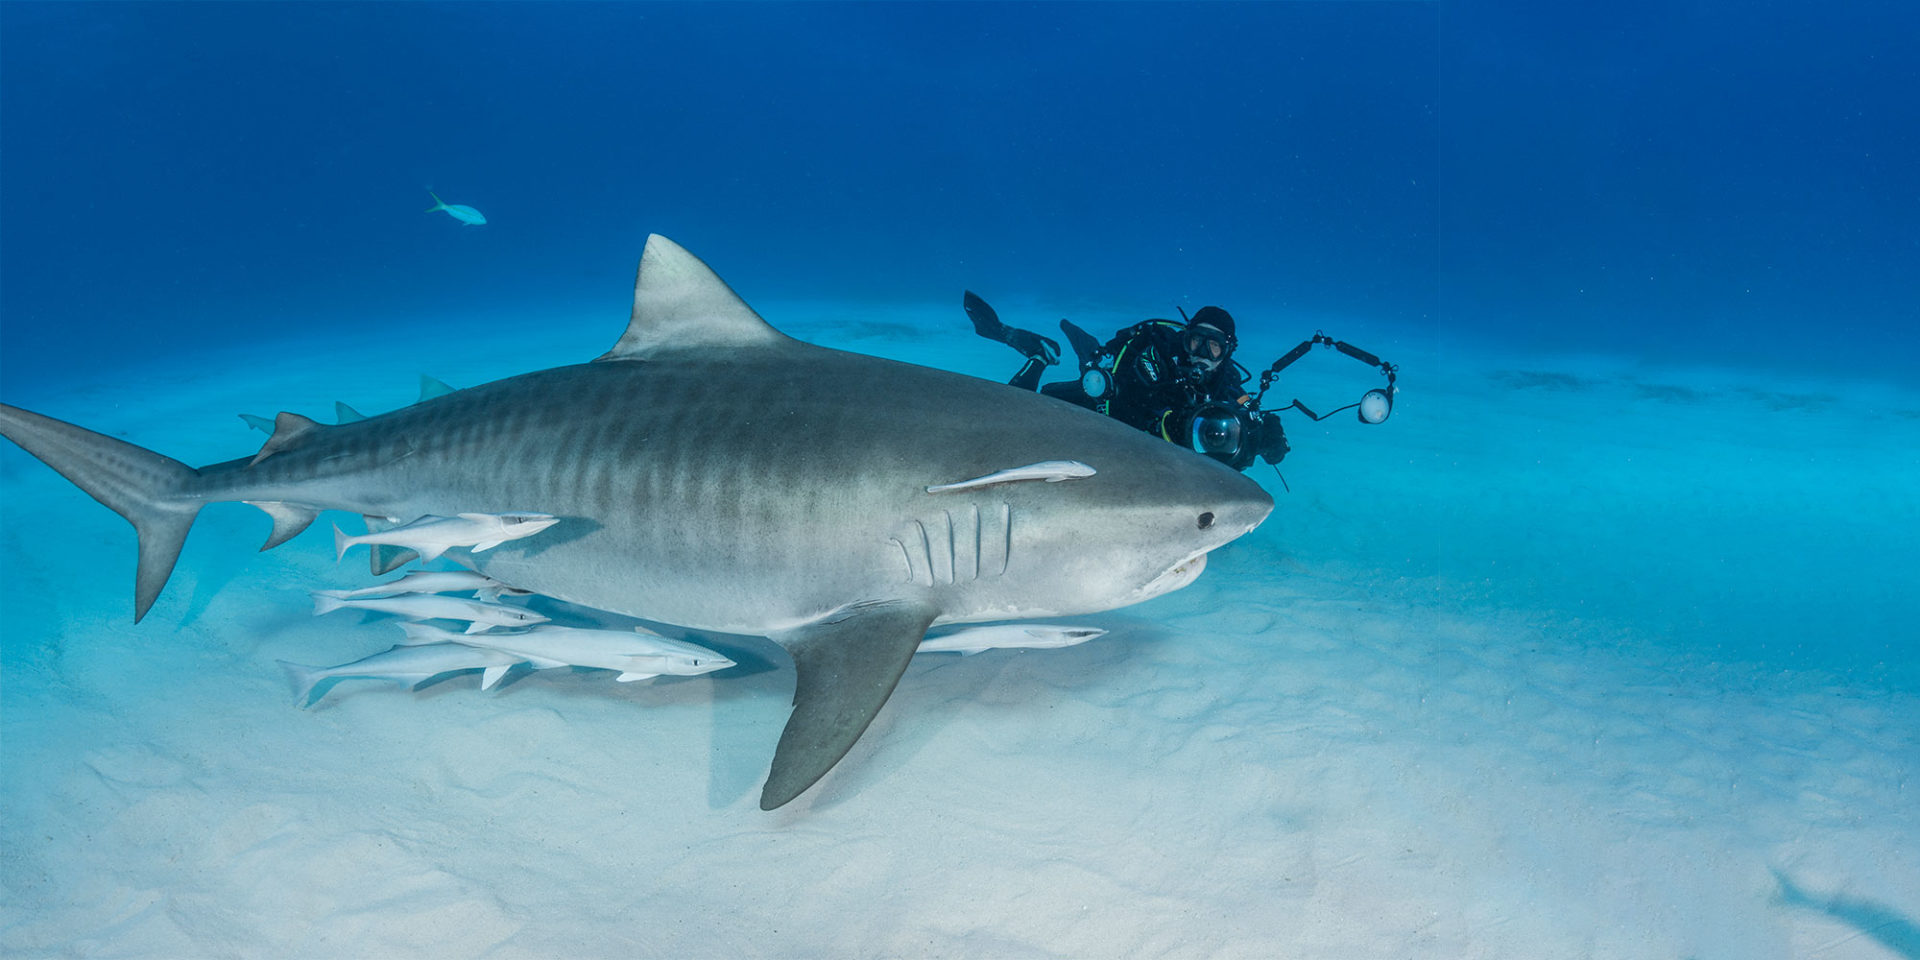 Diving with Tiger Sharks, Lemon Sharks, Caribbean Reef Sharks